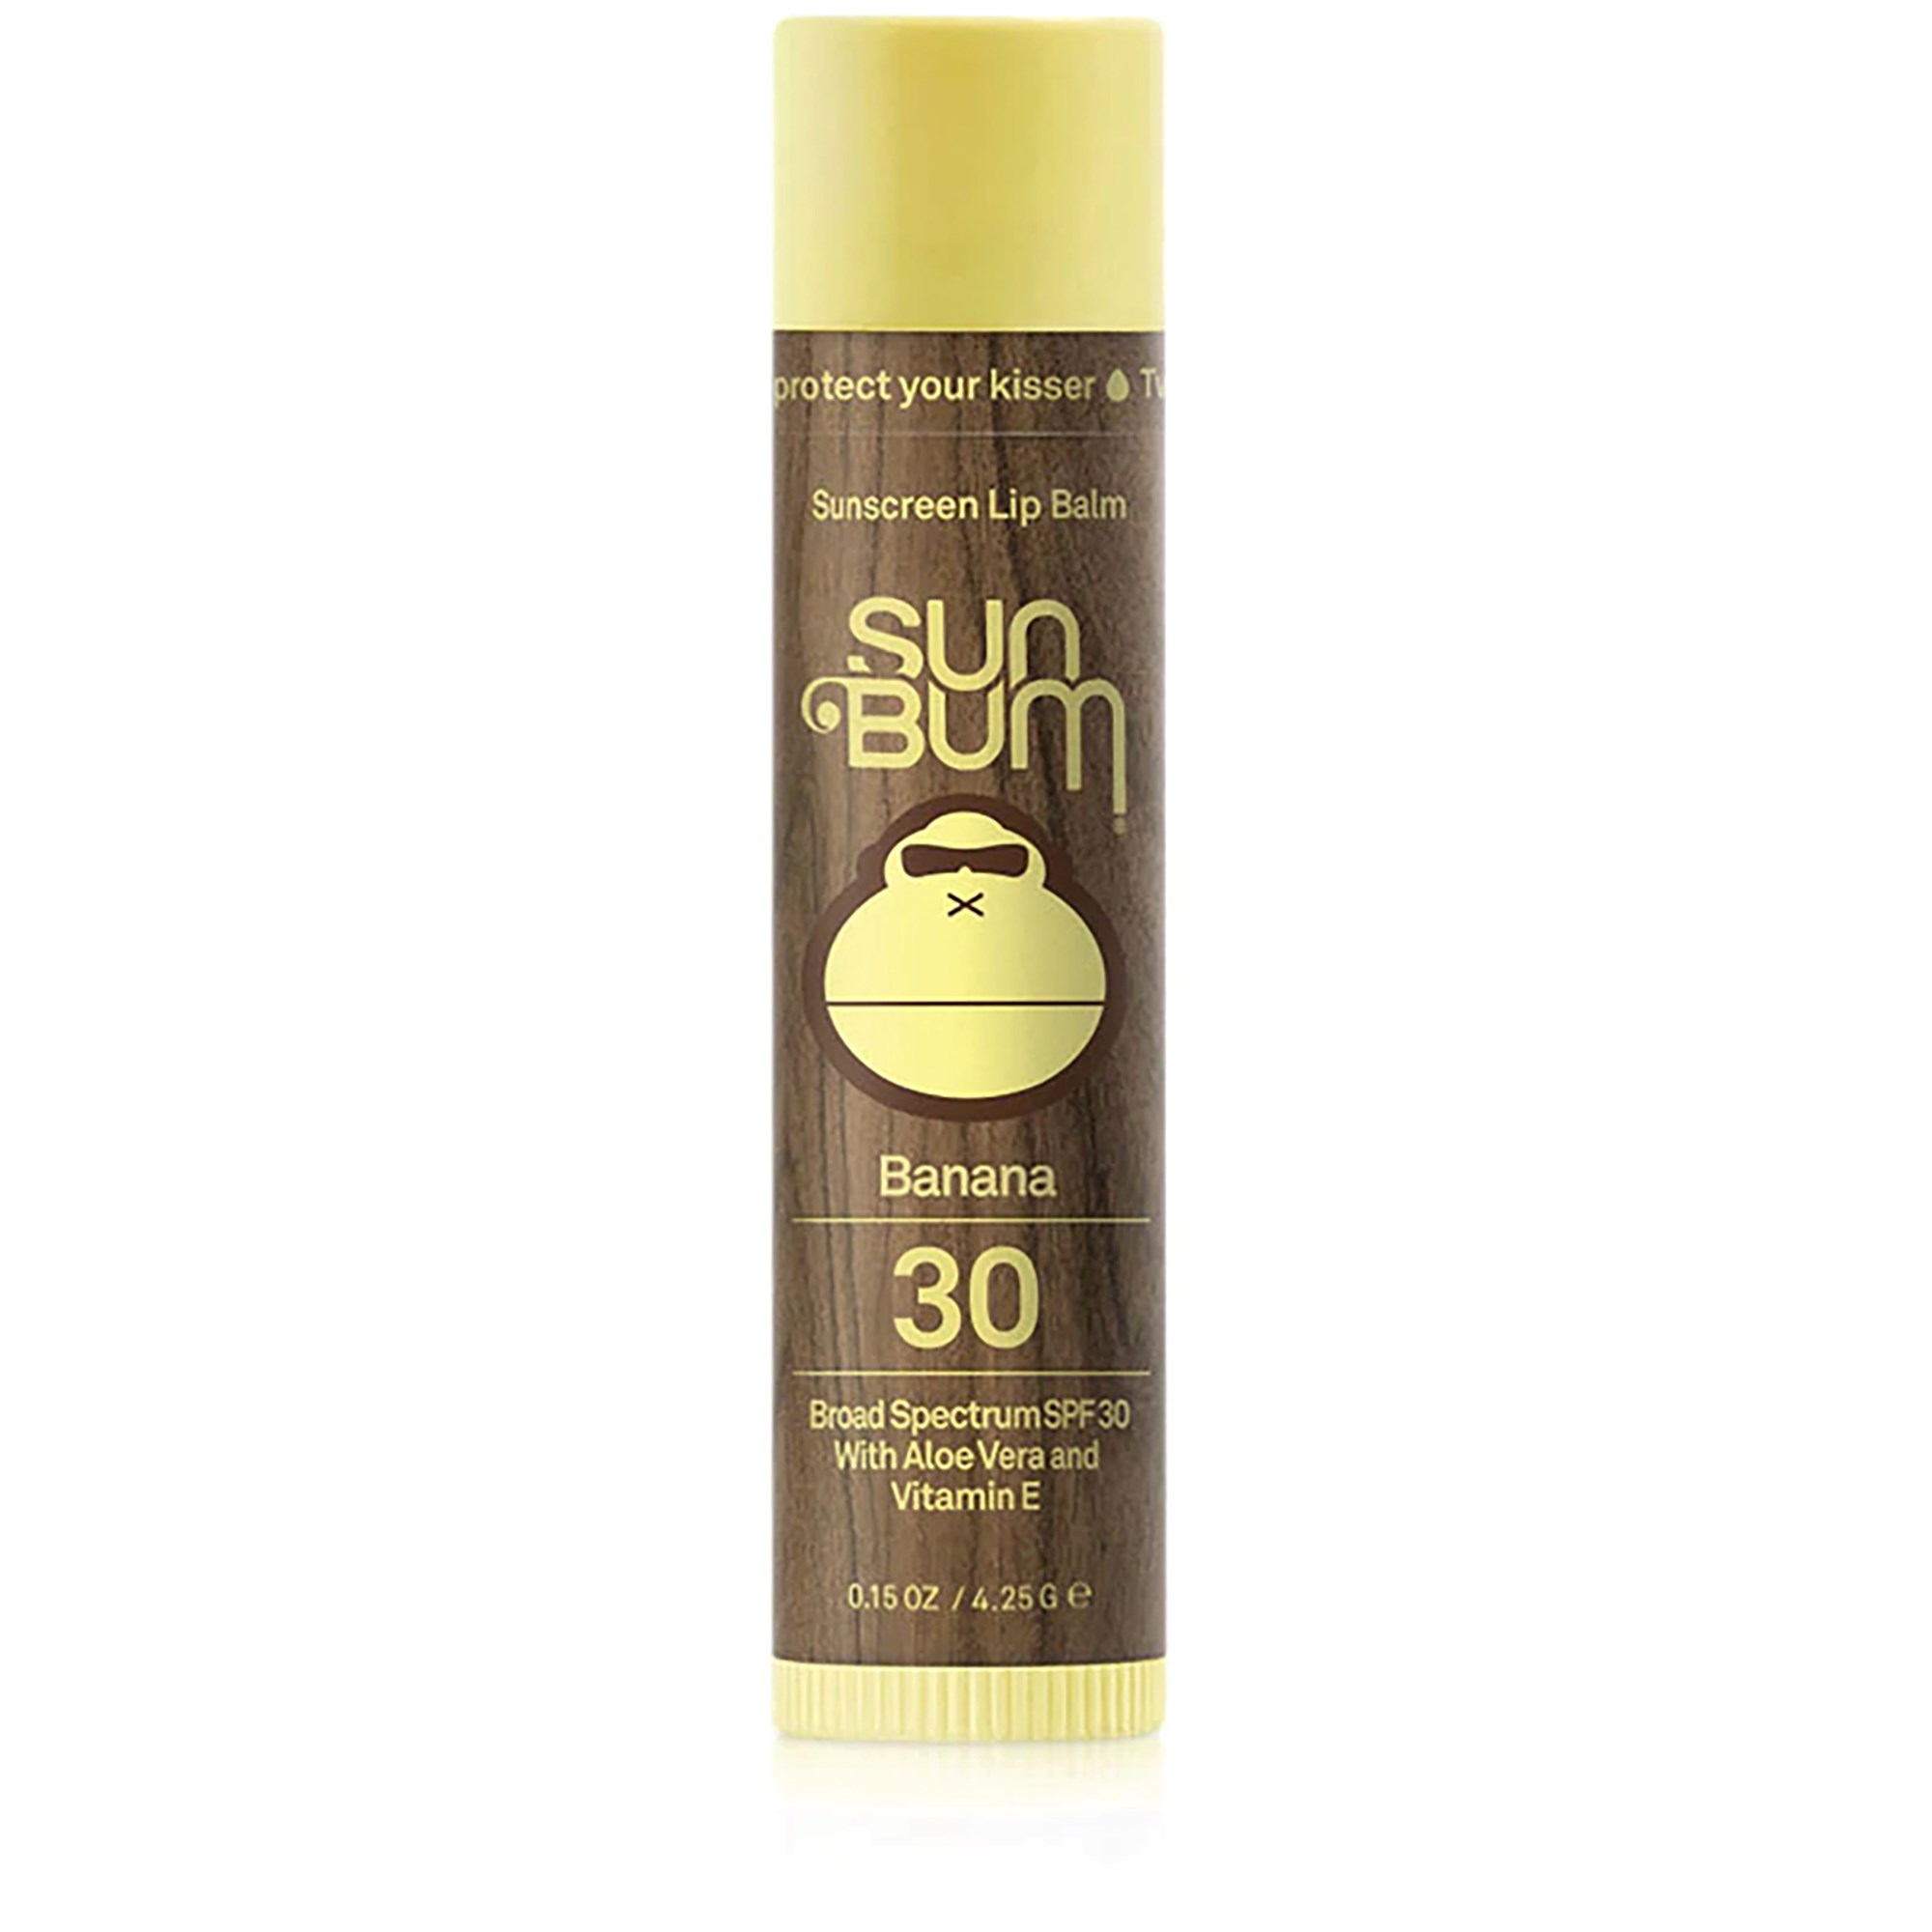 Bilde av Sun Bum Original Spf 30 Sunscreen Lip Balm Banana